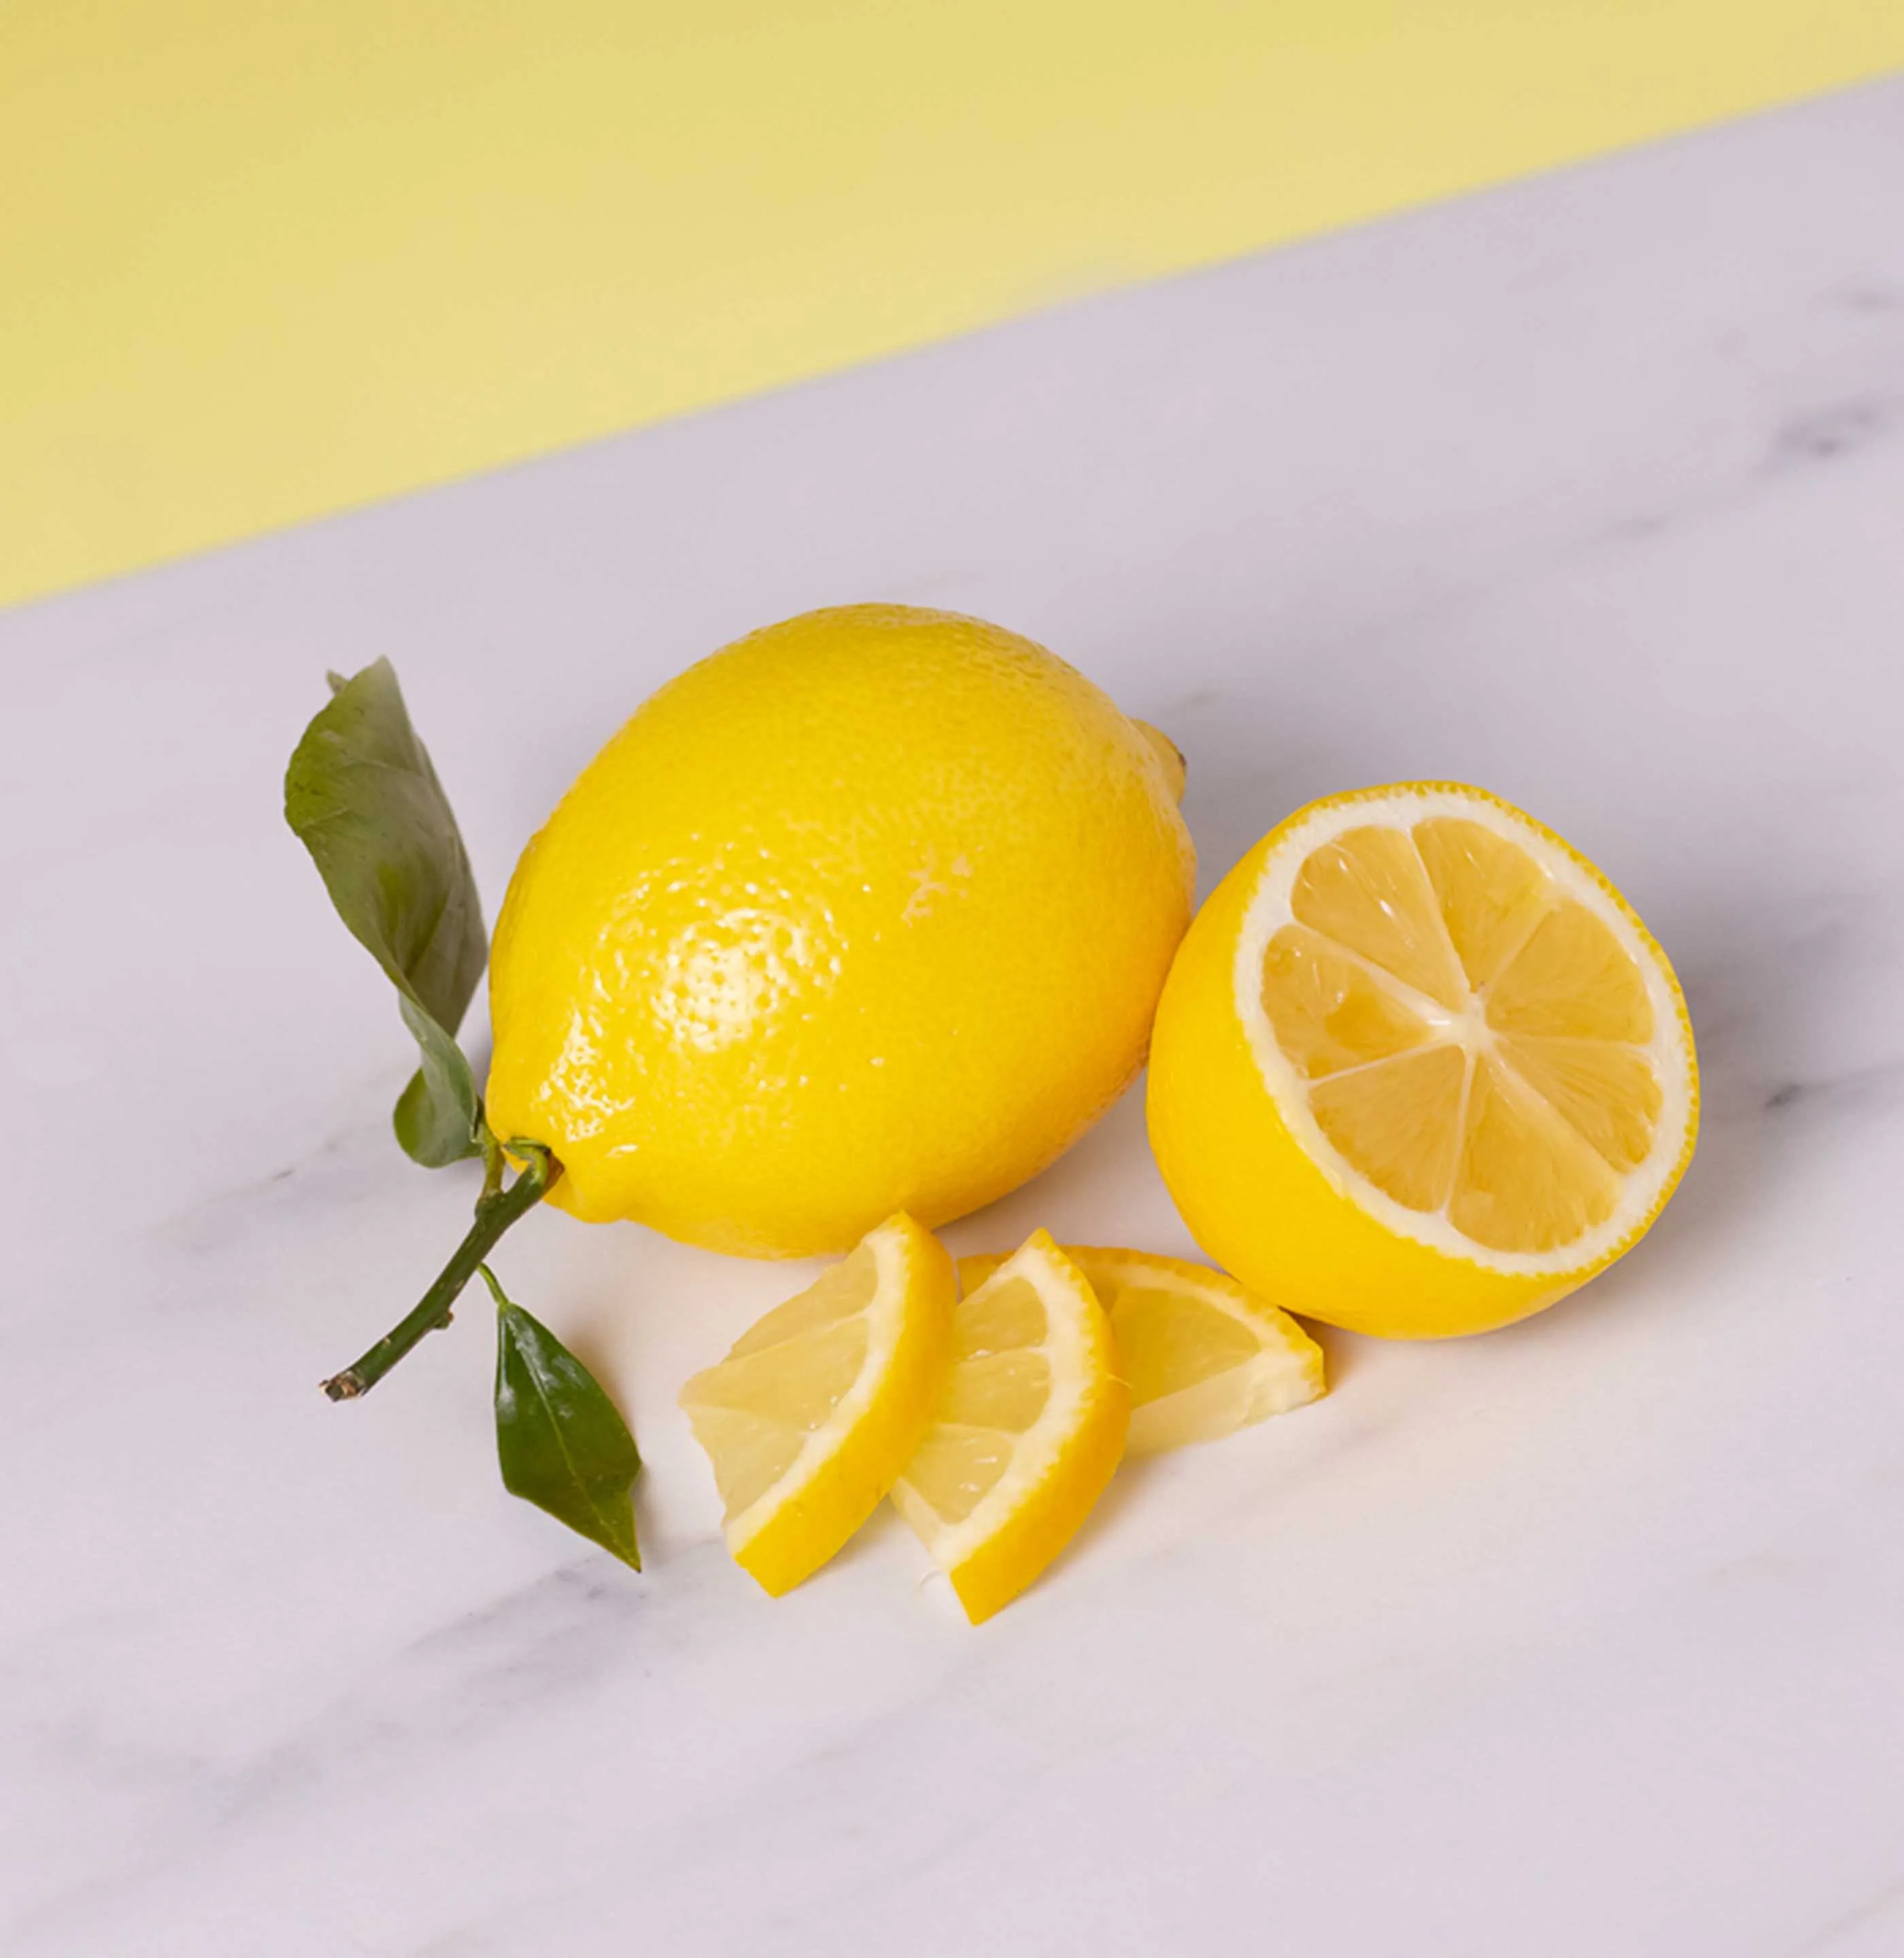 Lemon and sliced lemon on counter